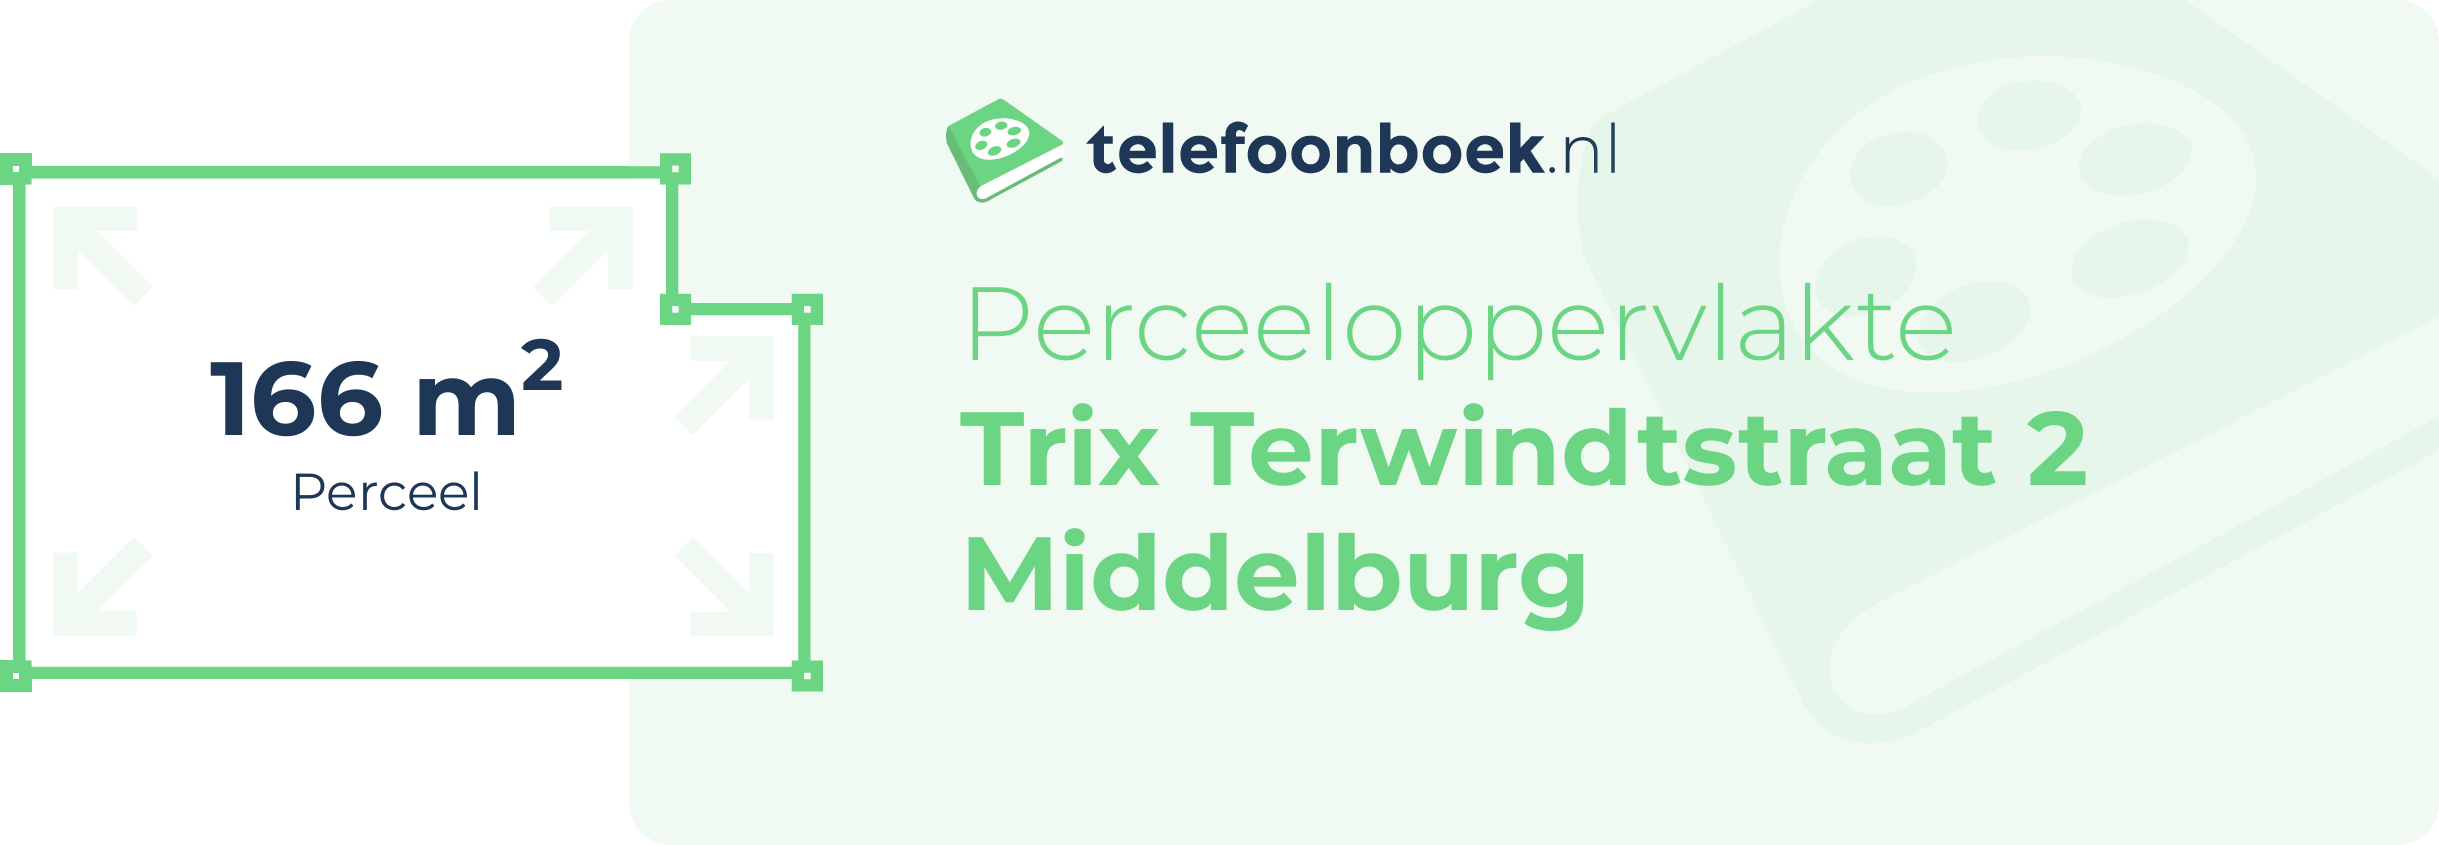 Perceeloppervlakte Trix Terwindtstraat 2 Middelburg